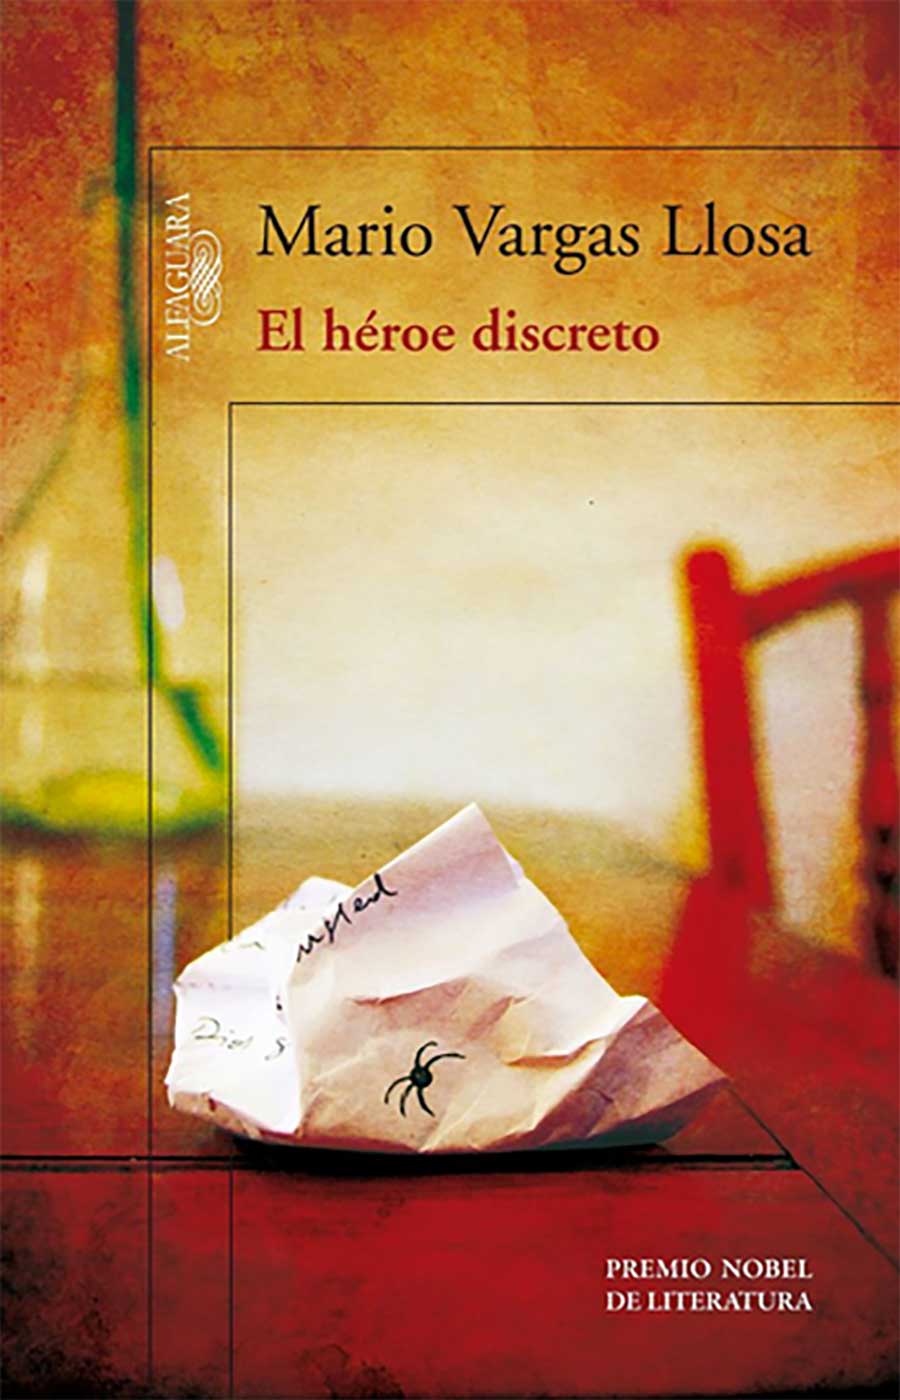 El héroe discreto es una novela escrita por Mario Vargas Llosa, Premio Nobel de literatura 2010.